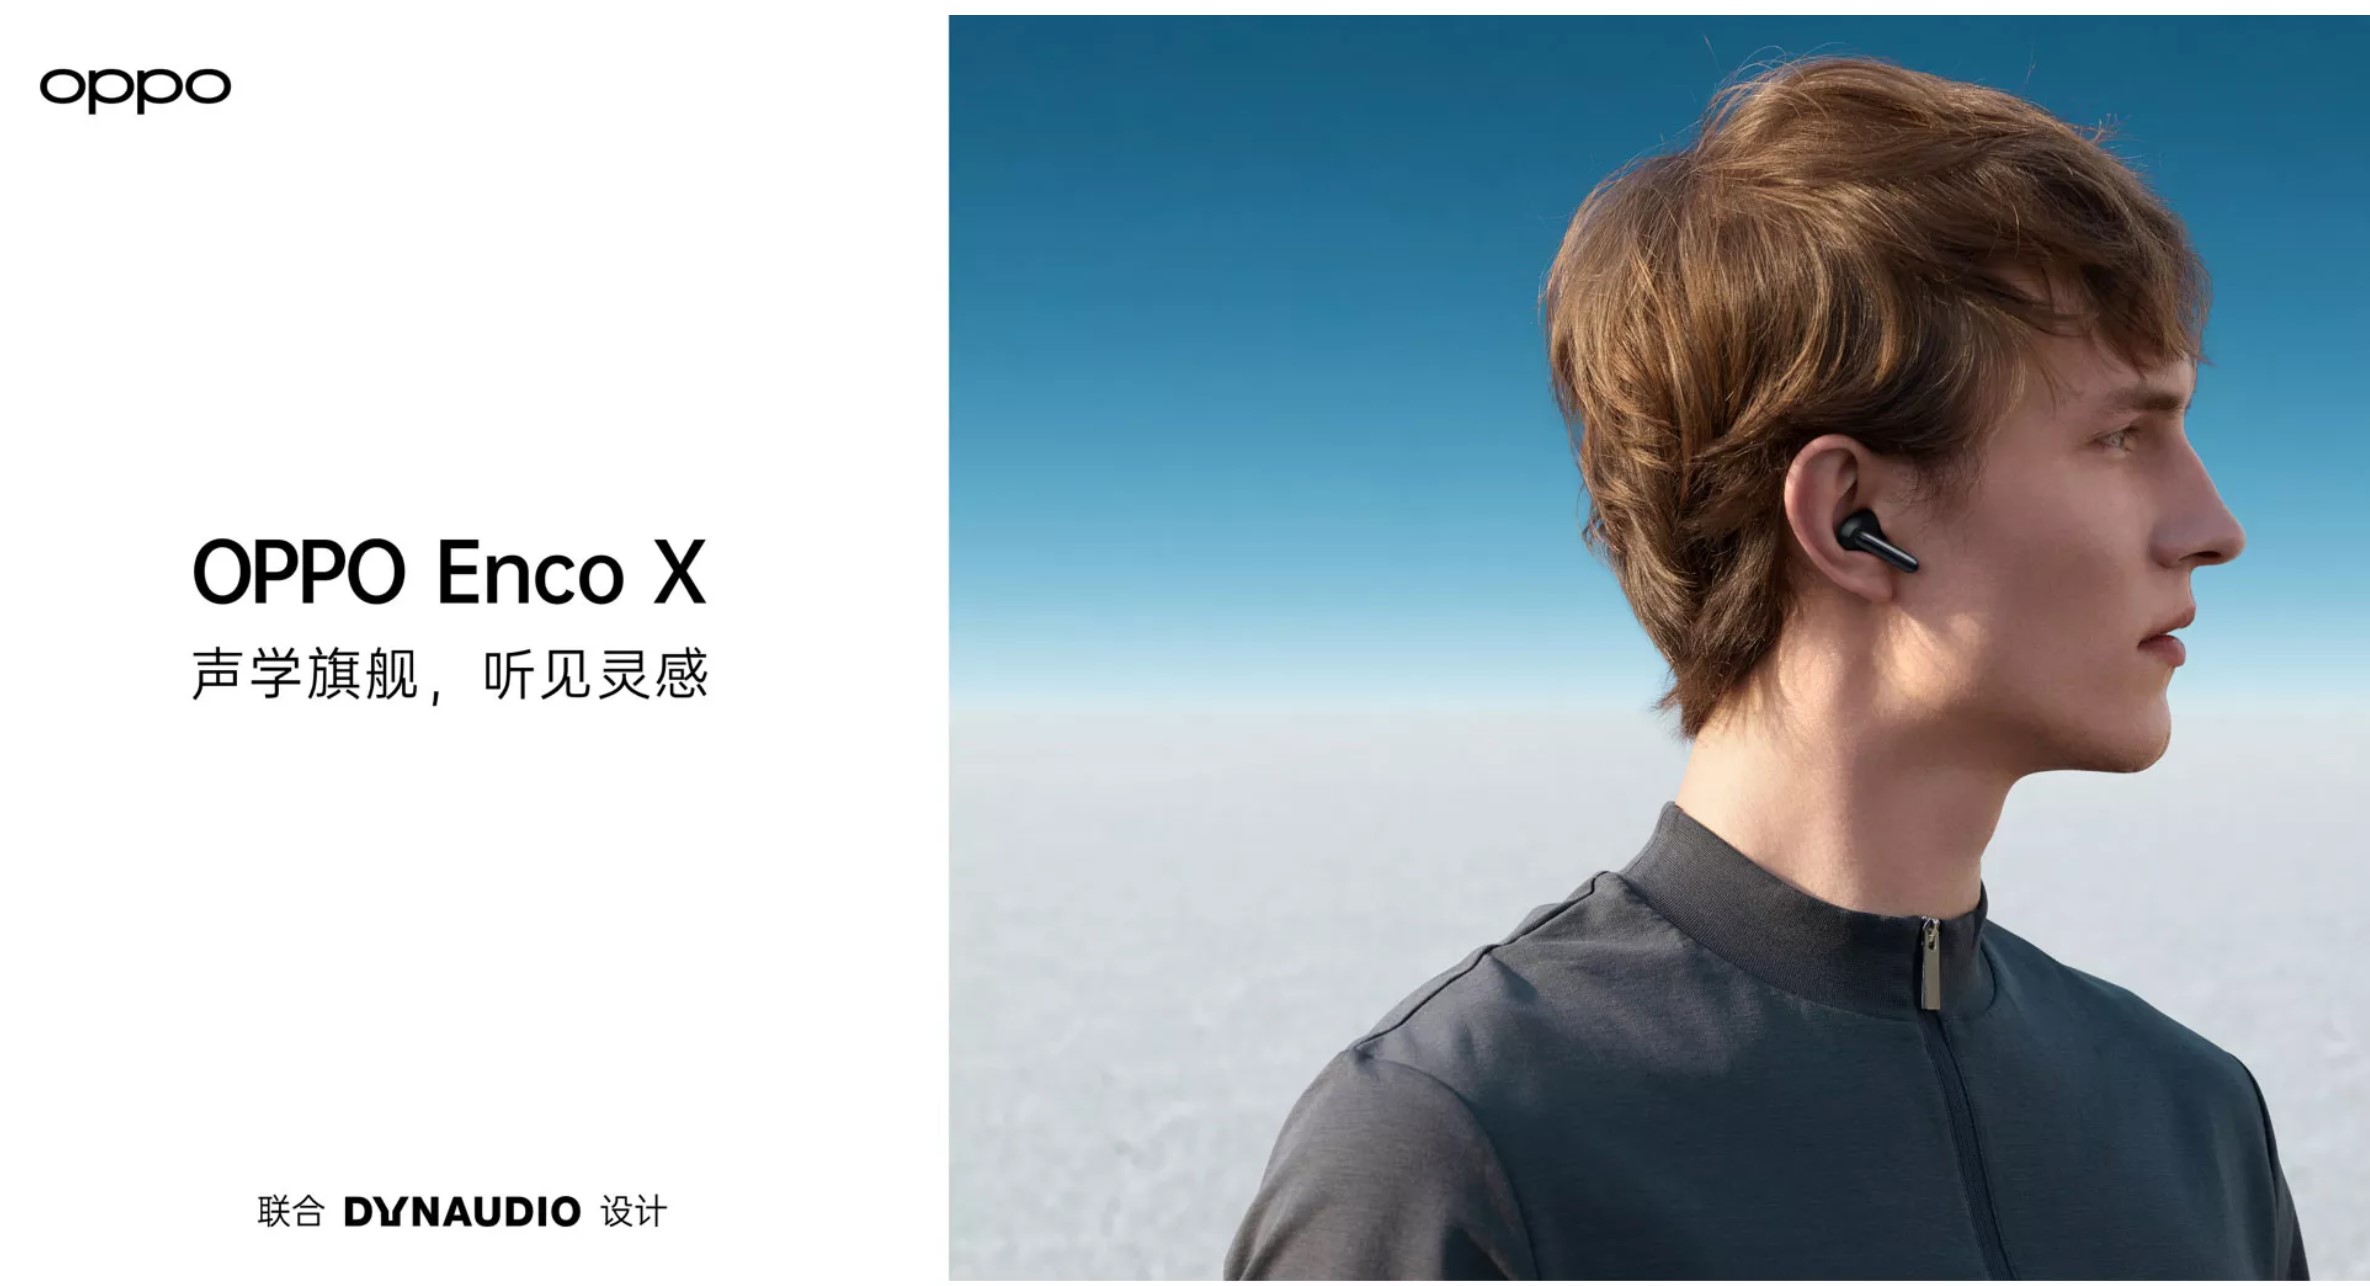 OPPO Enco X正式发售 声加科技三麦克风通话降噪方案再升级